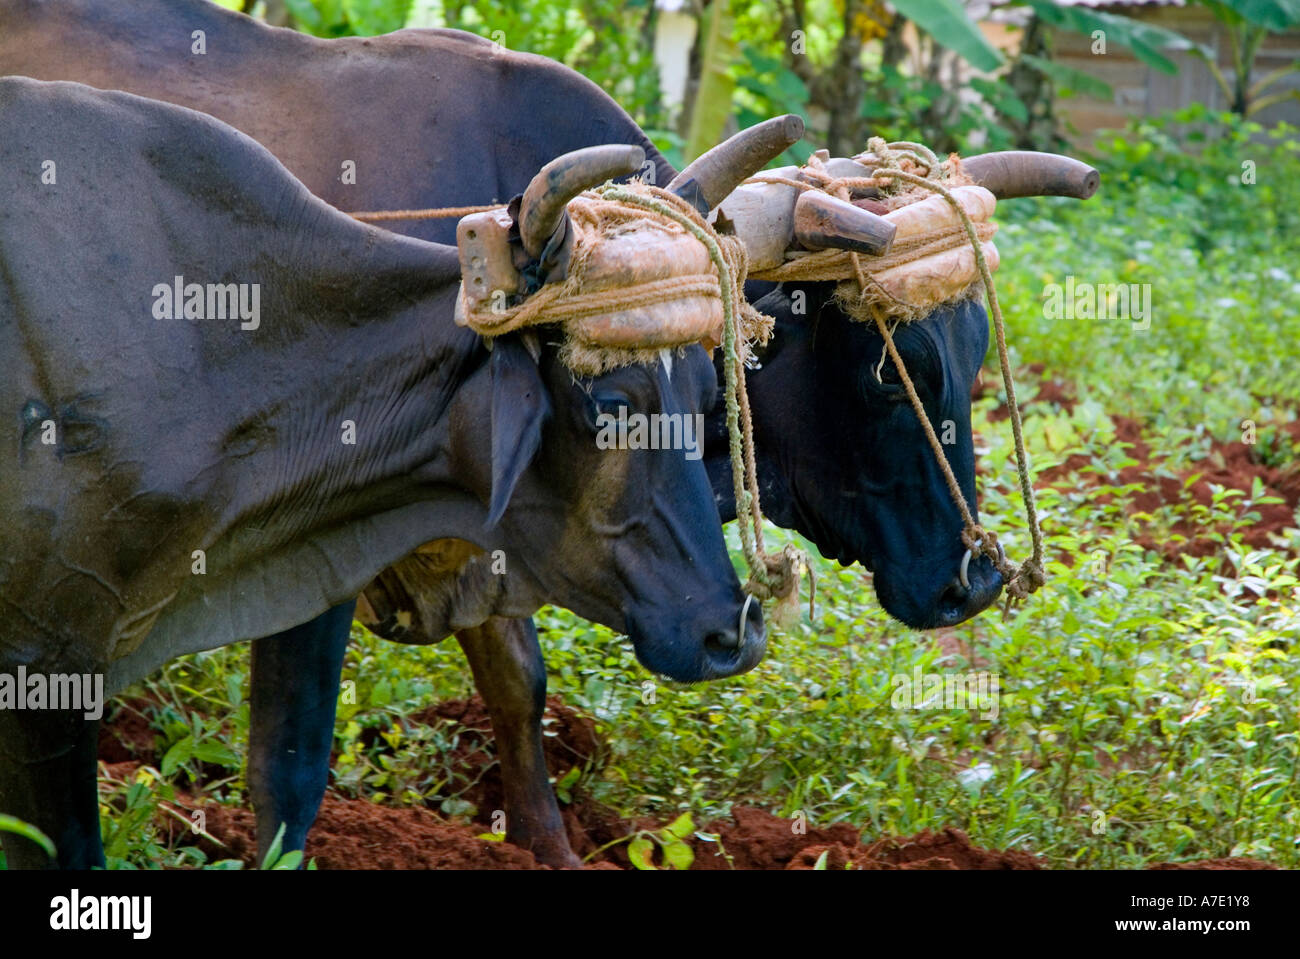 Deux taureaux / bœufs de labour d'un champ, Vinales, province de Pinar del Rio, Cuba. Banque D'Images